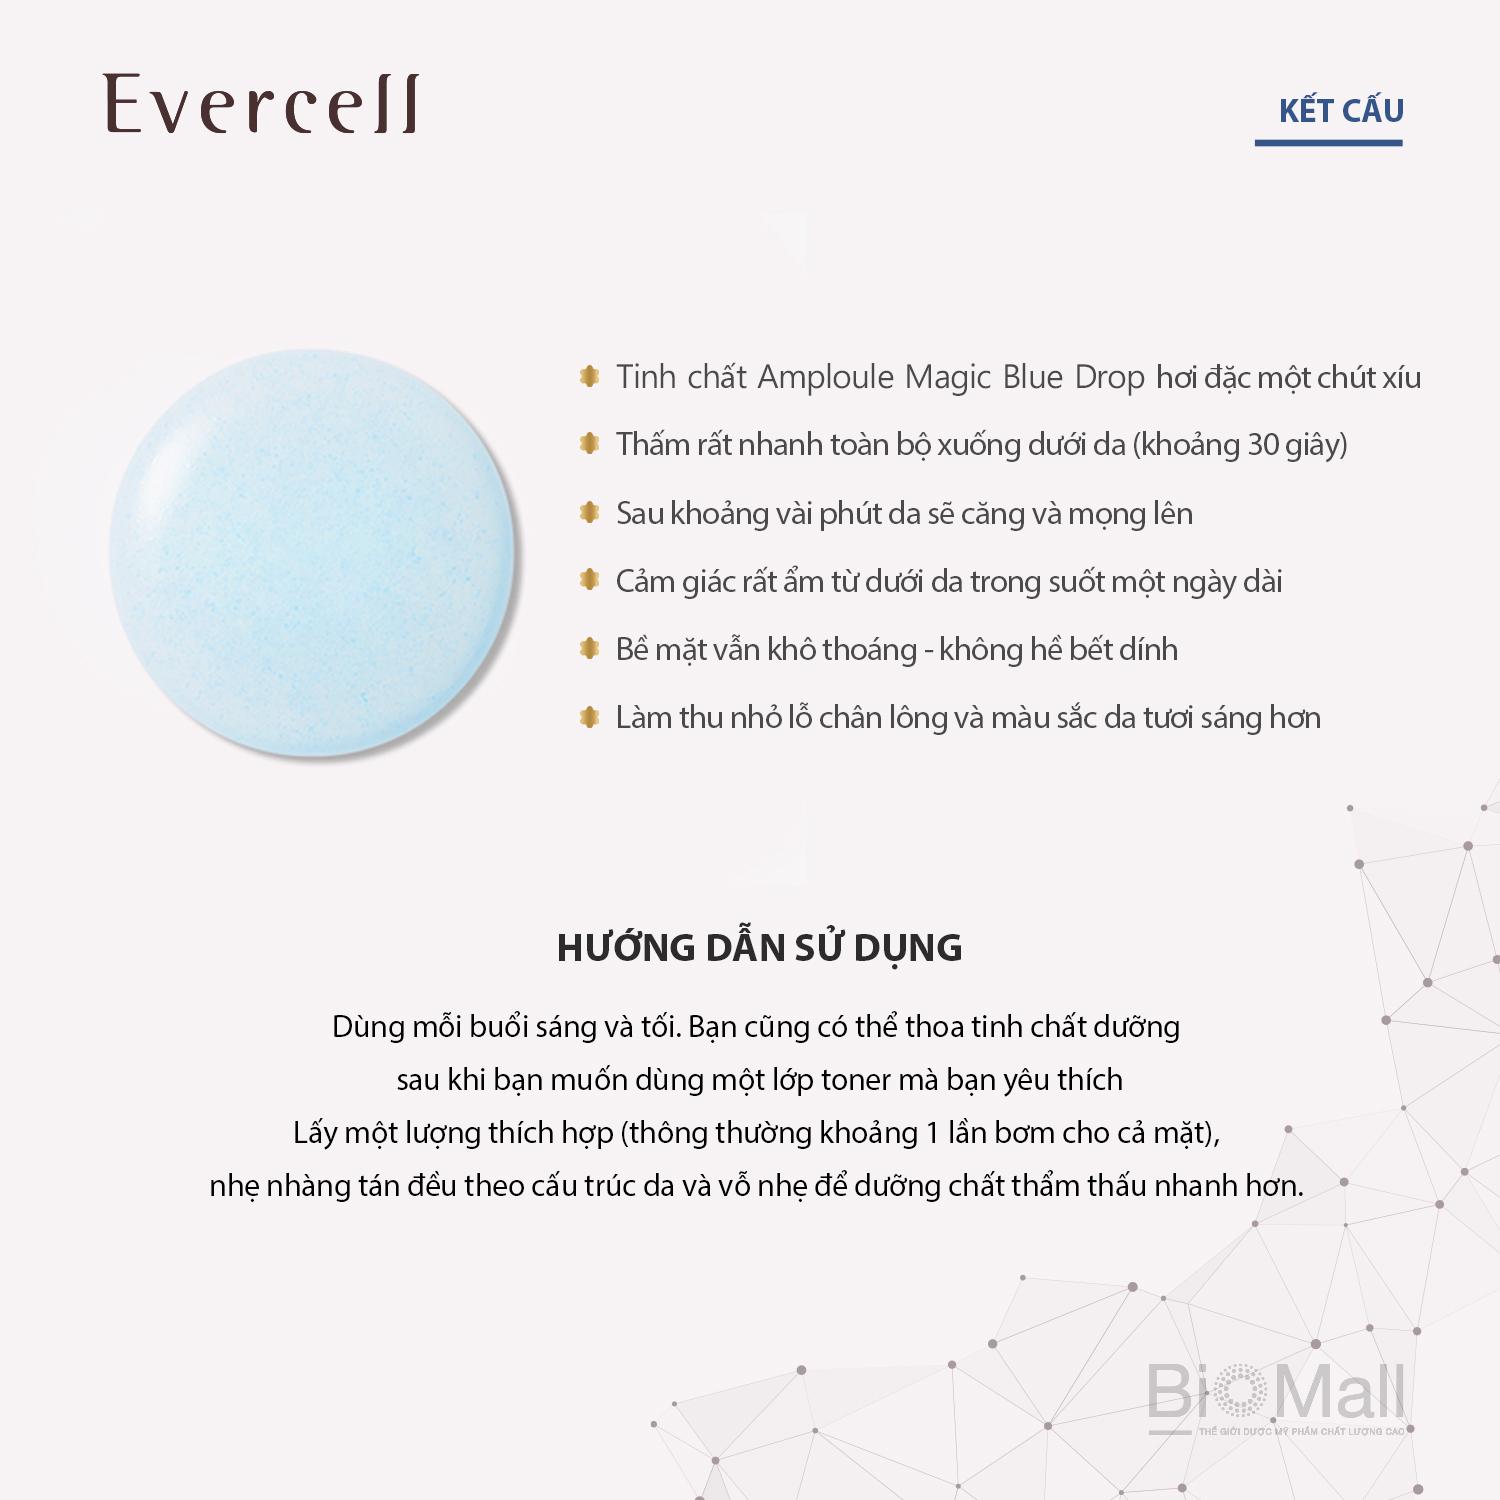 Evercell Magic Blue Drop 4 chai x 10 ml